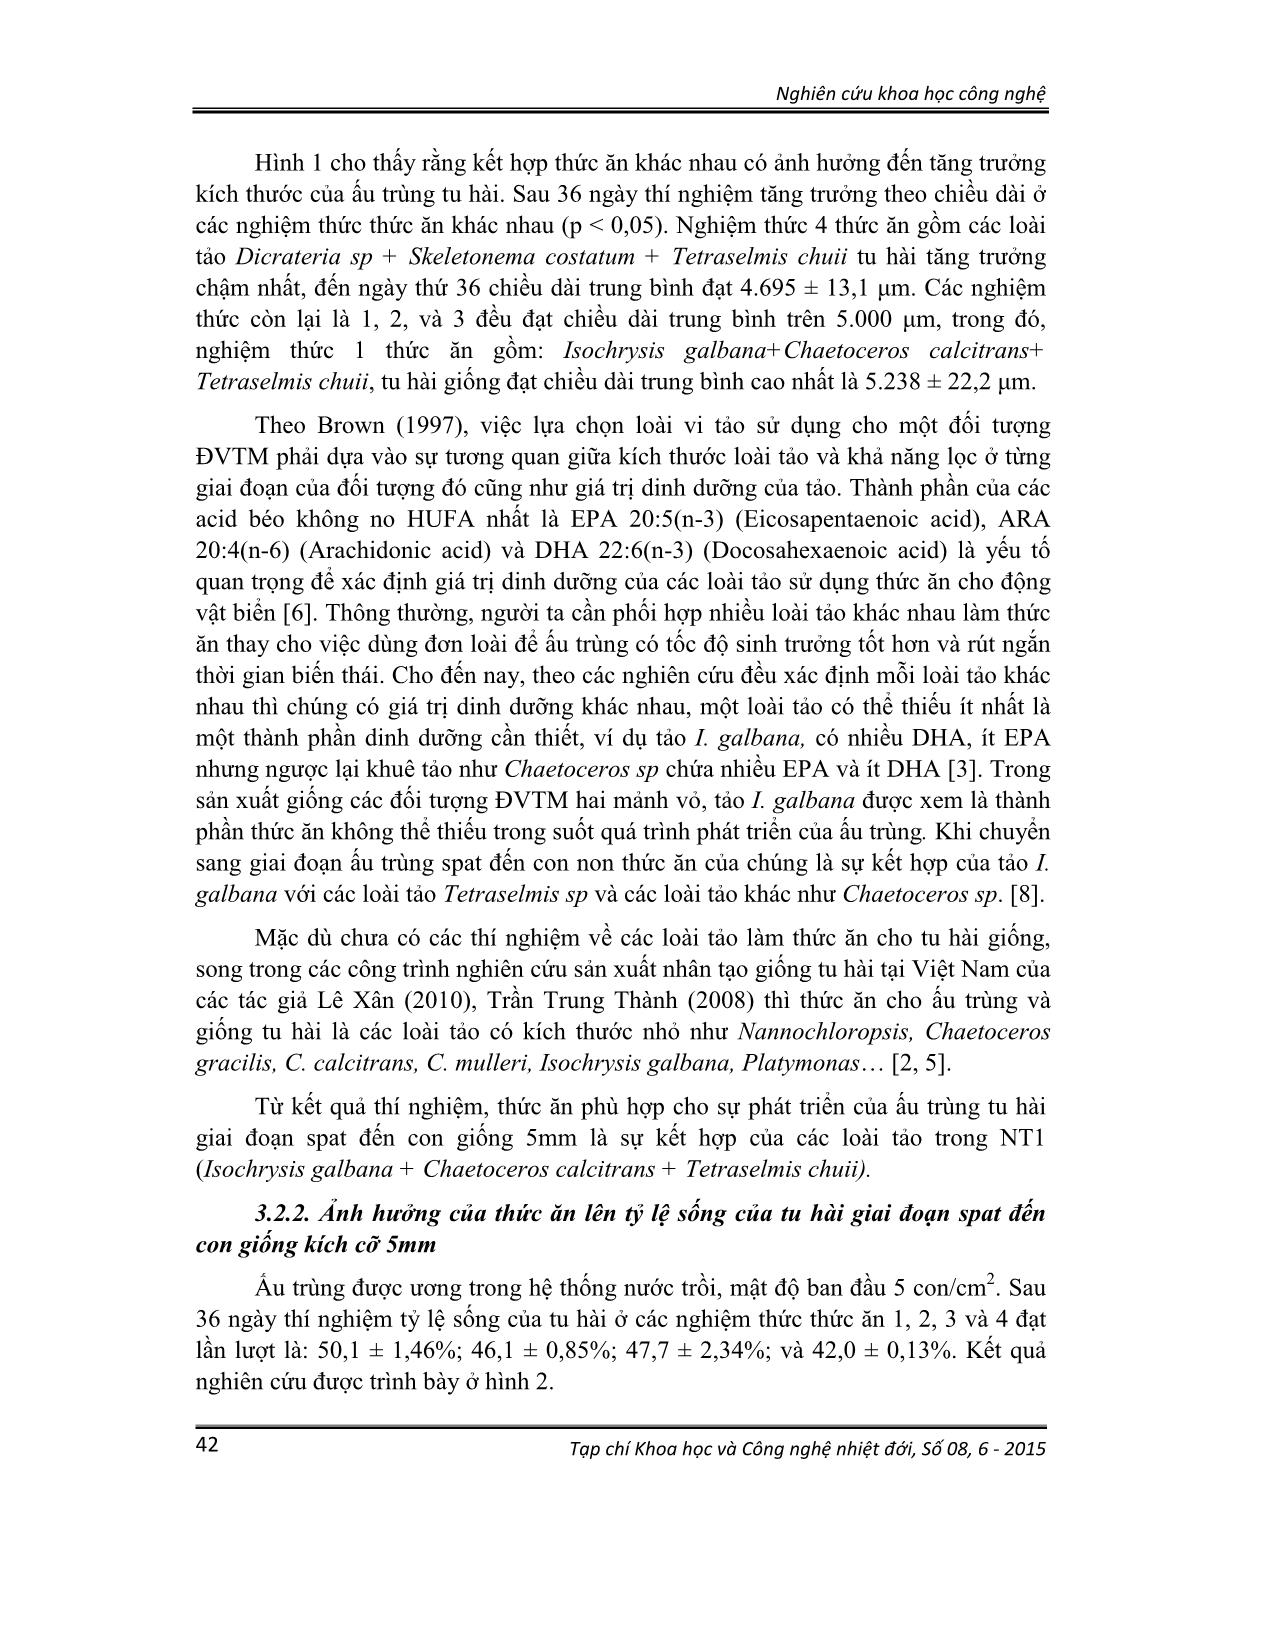 Ảnh hưởng của thức ăn, chế độ cho ăn lên sinh trưởng và tỷ lệ sống của tu hài (lutraria rhynchaena jonas, 1844) giai đoạn xuống đáy đến kích cỡ 5mm trang 5